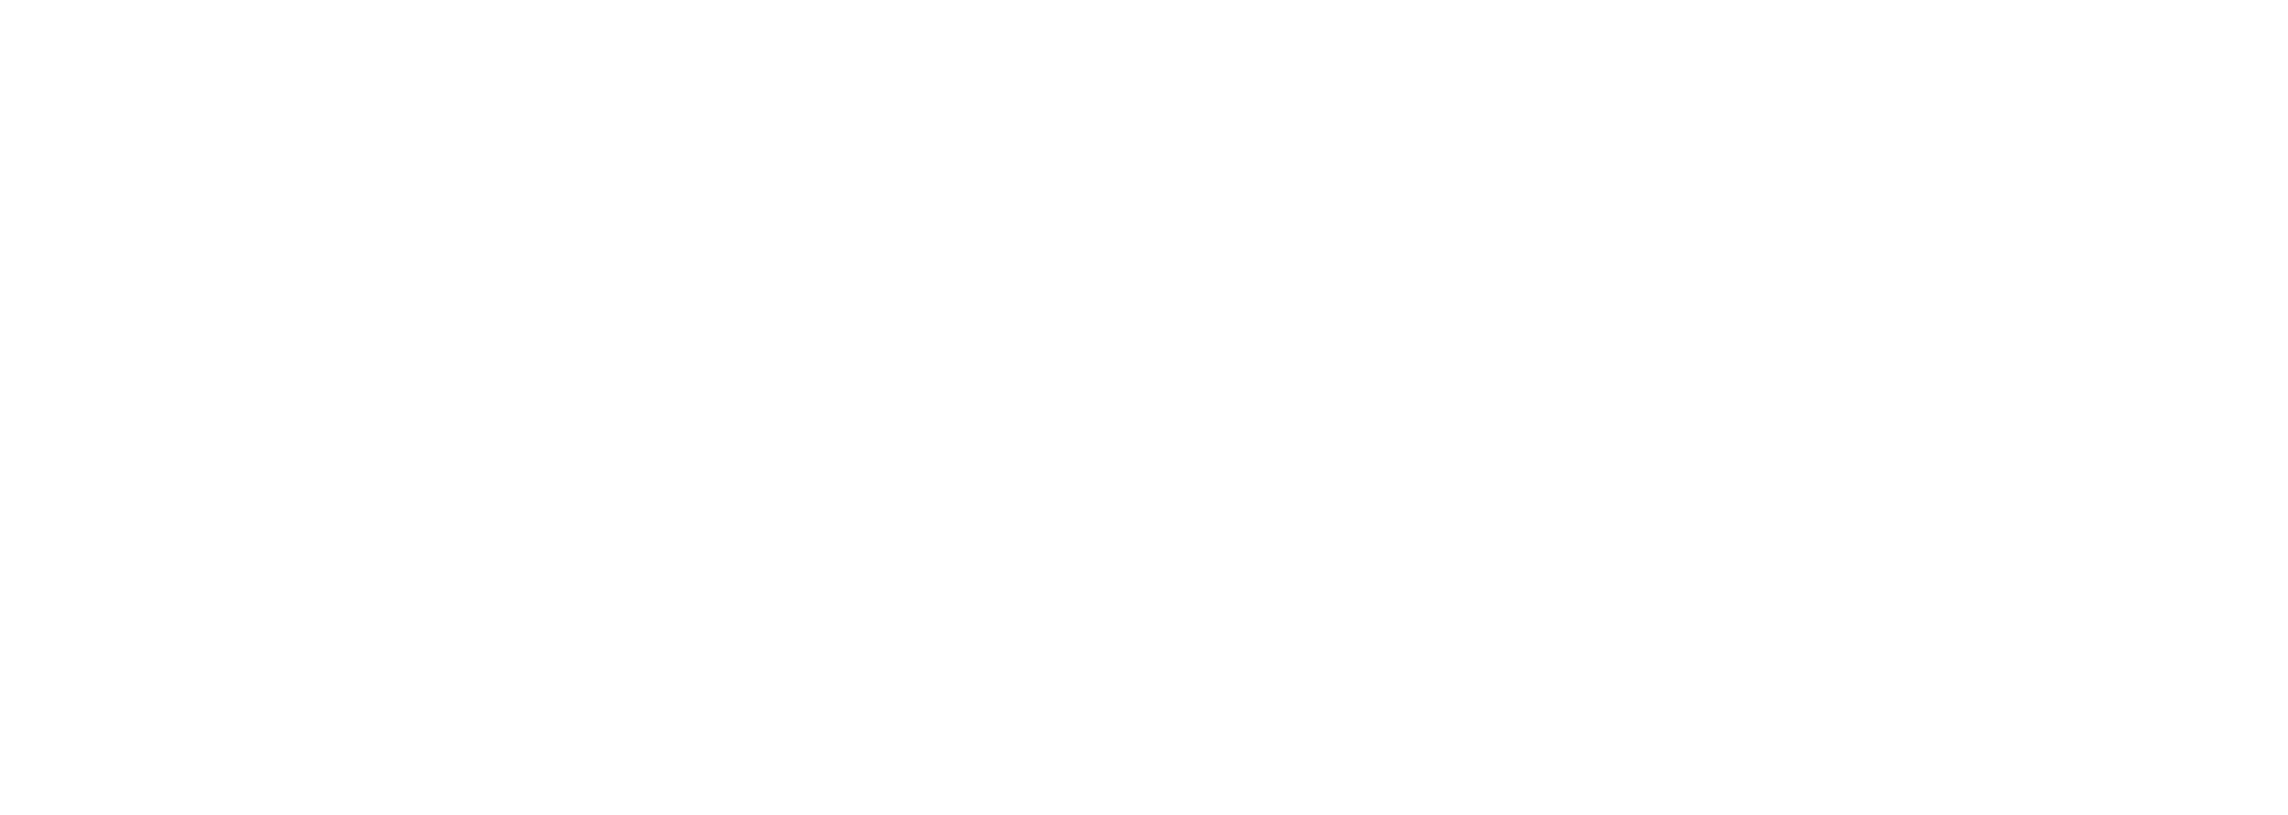 Murfreesboro.com logo dark background 2